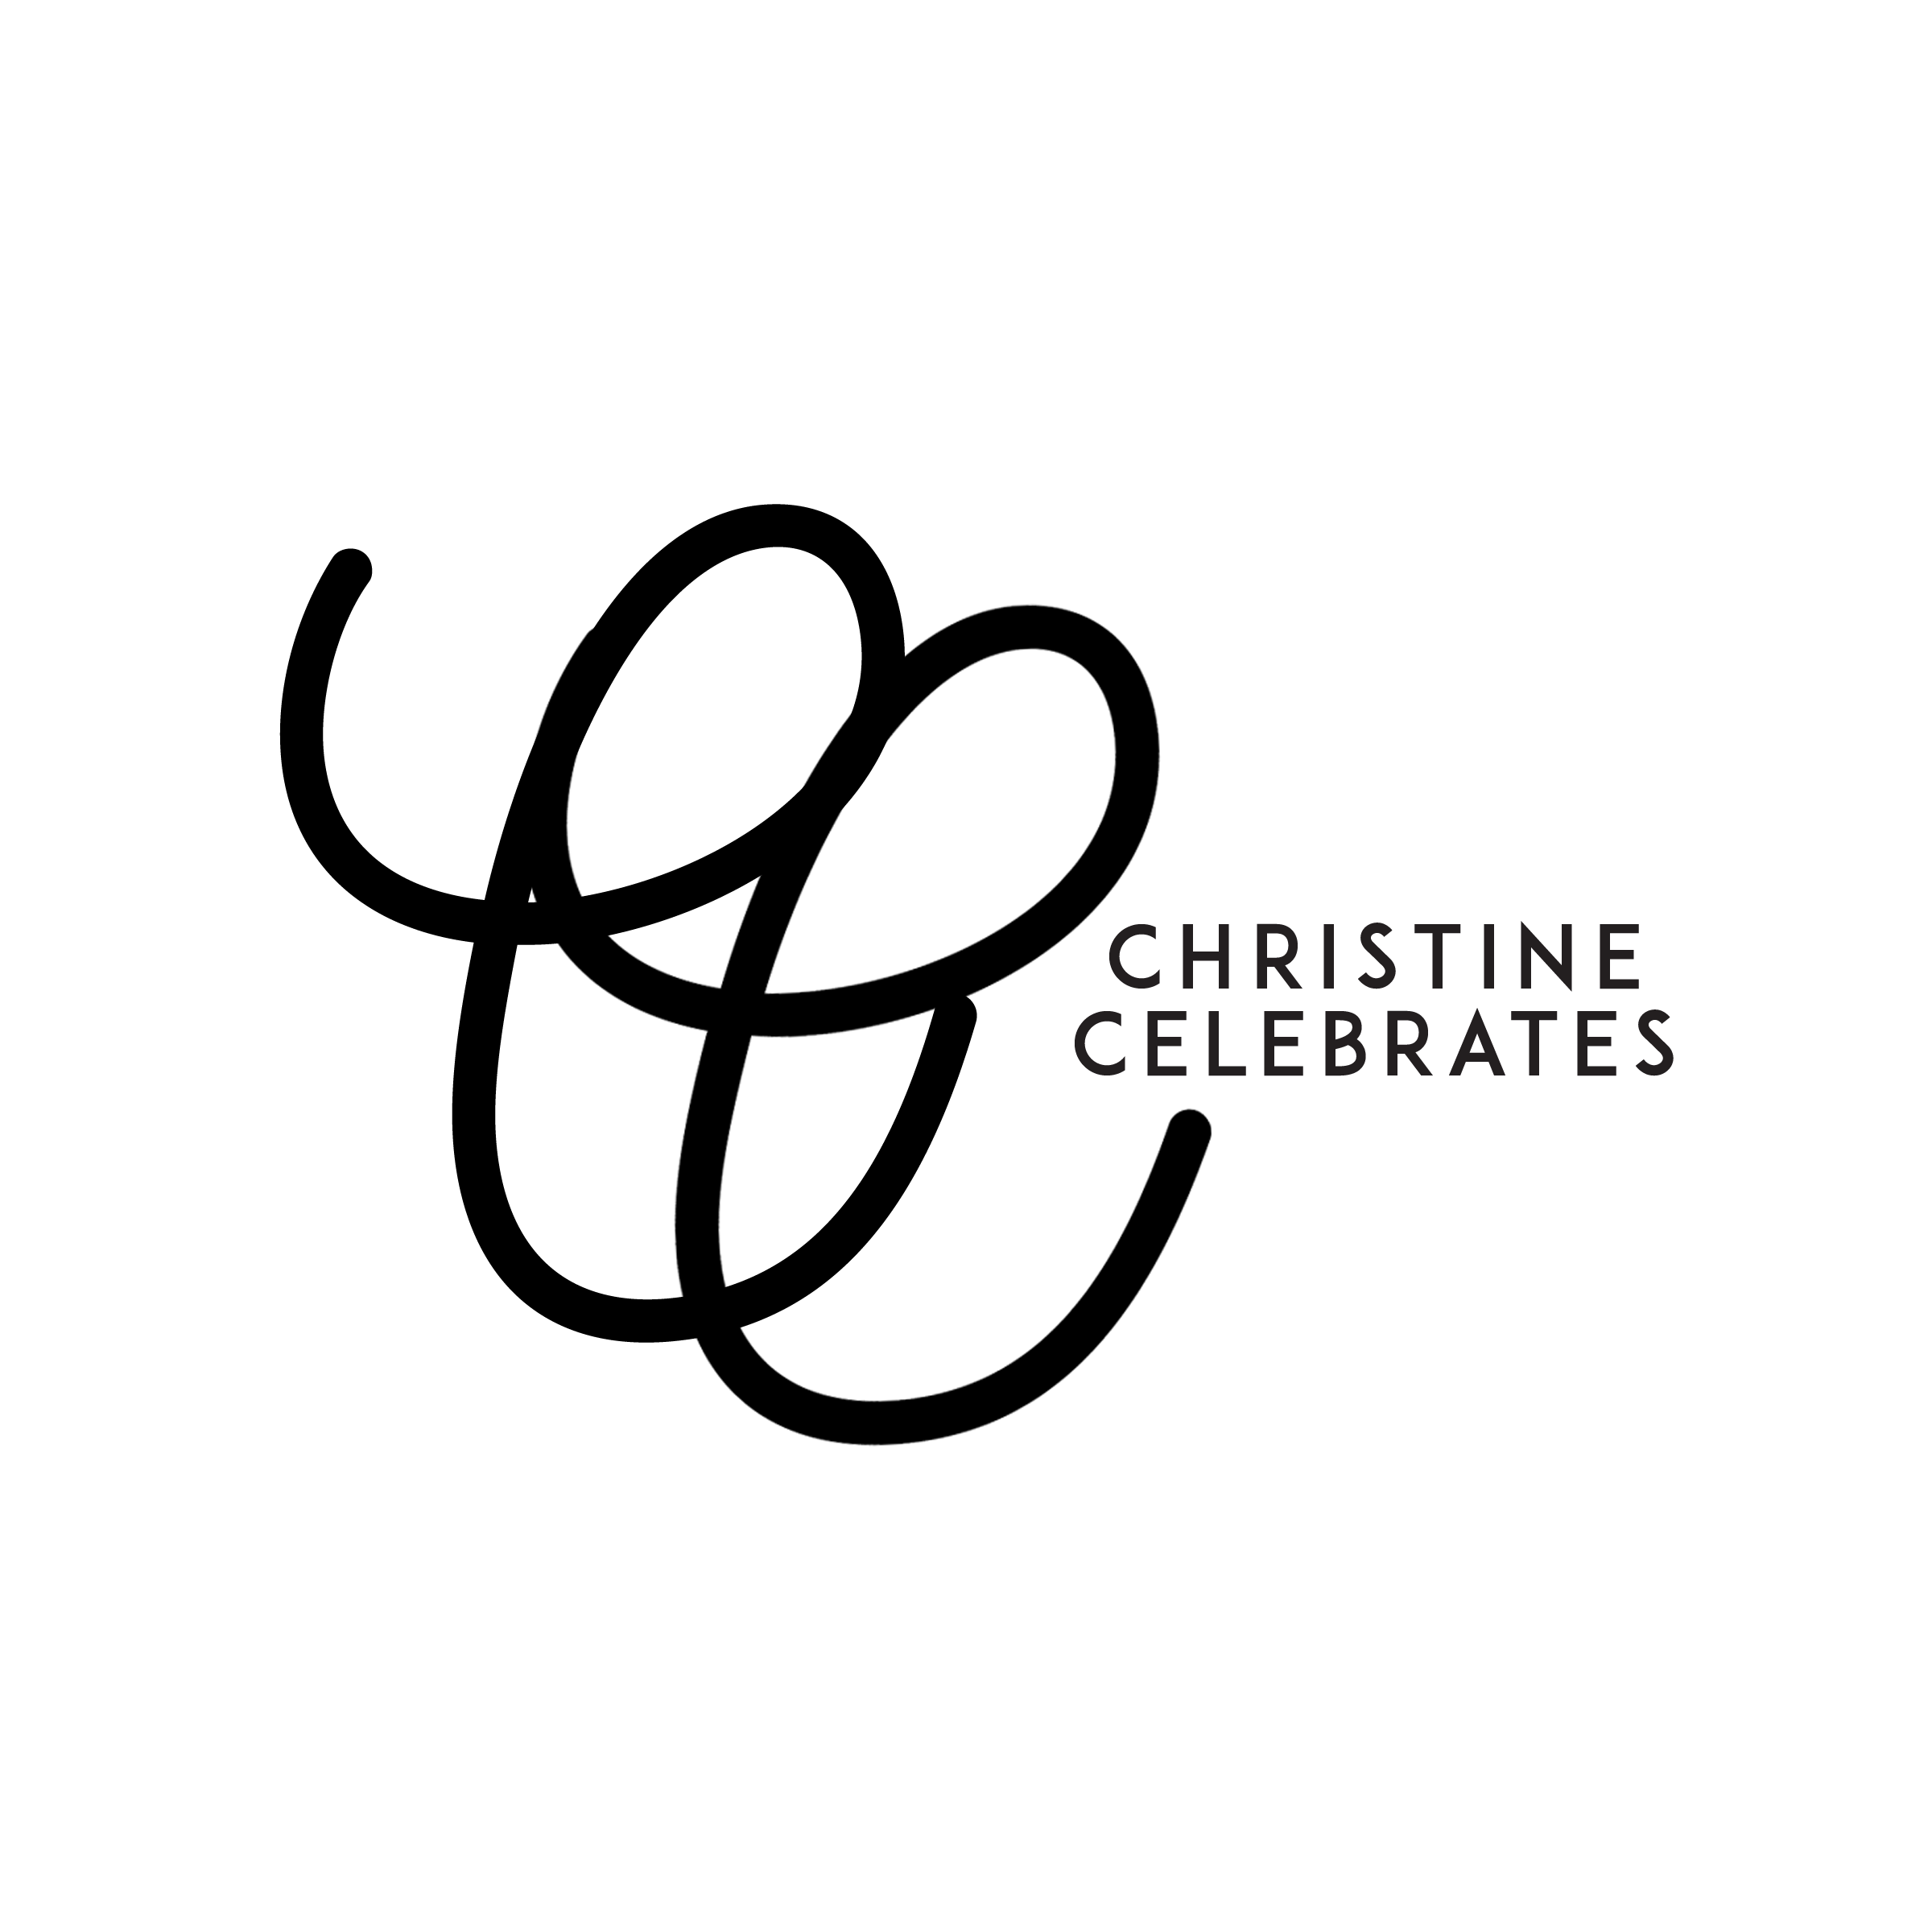 Christine Celebrates